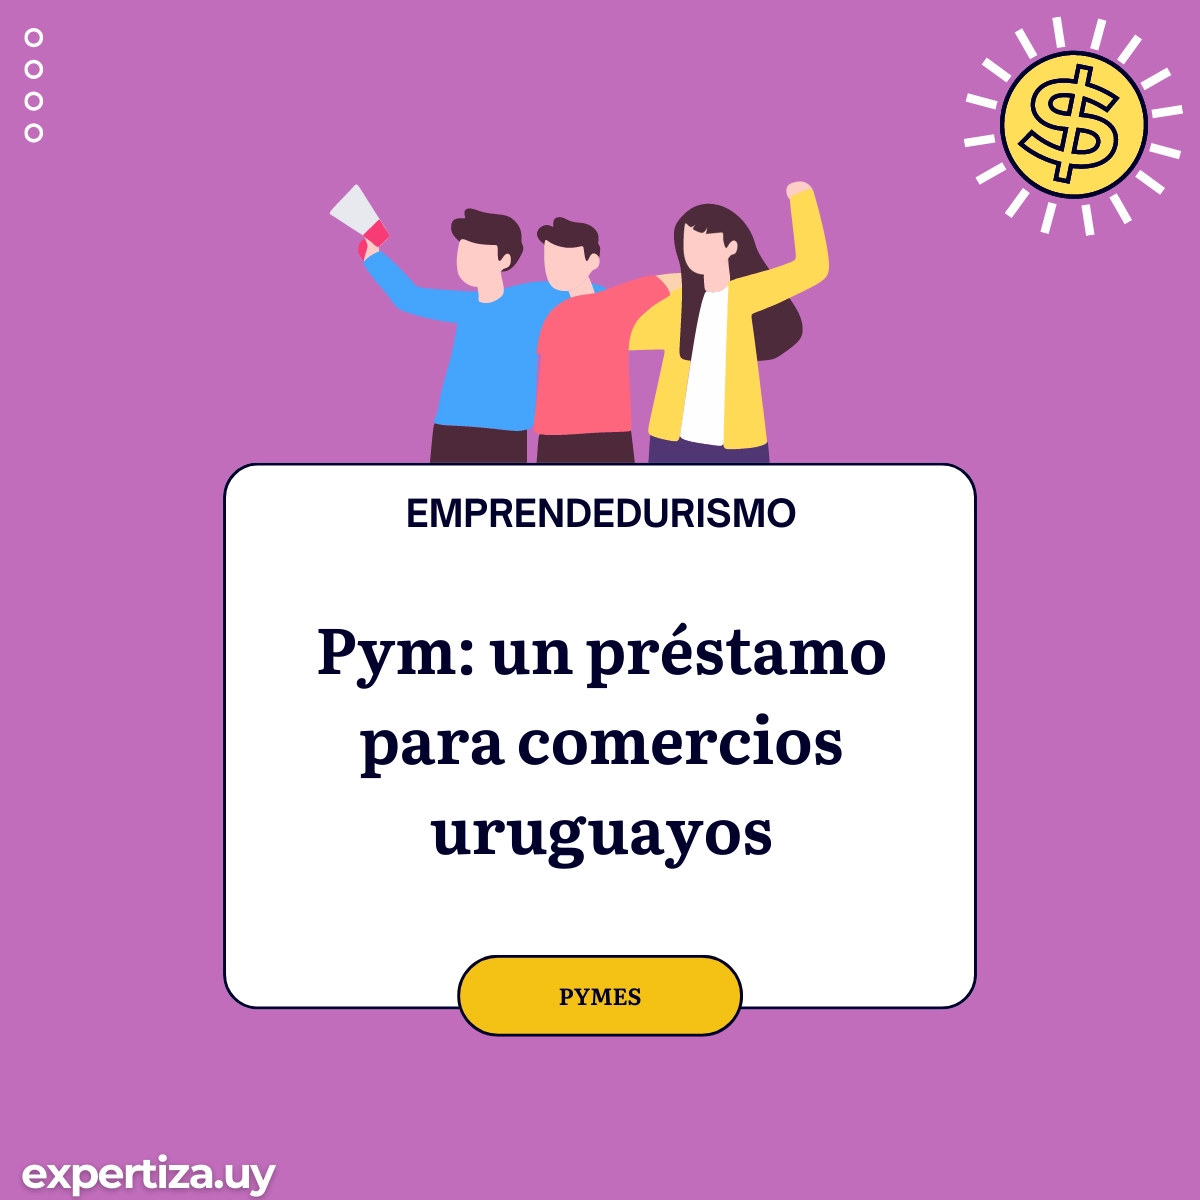 Pym: un préstamo para comercios uruguayos.